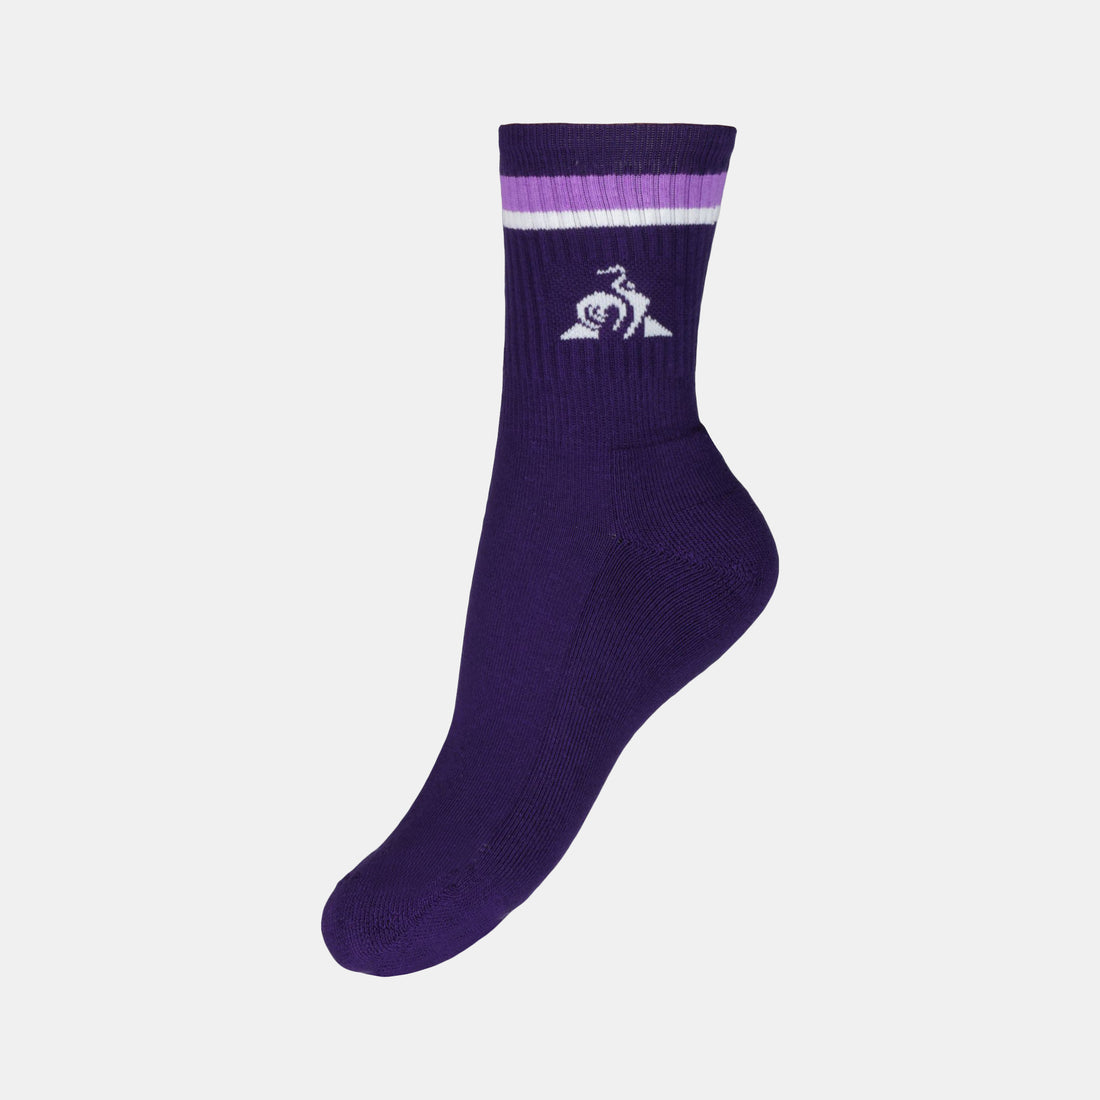 2410528-TENNIS Chaussettes 24 purple velvet  | Socks de sport for men